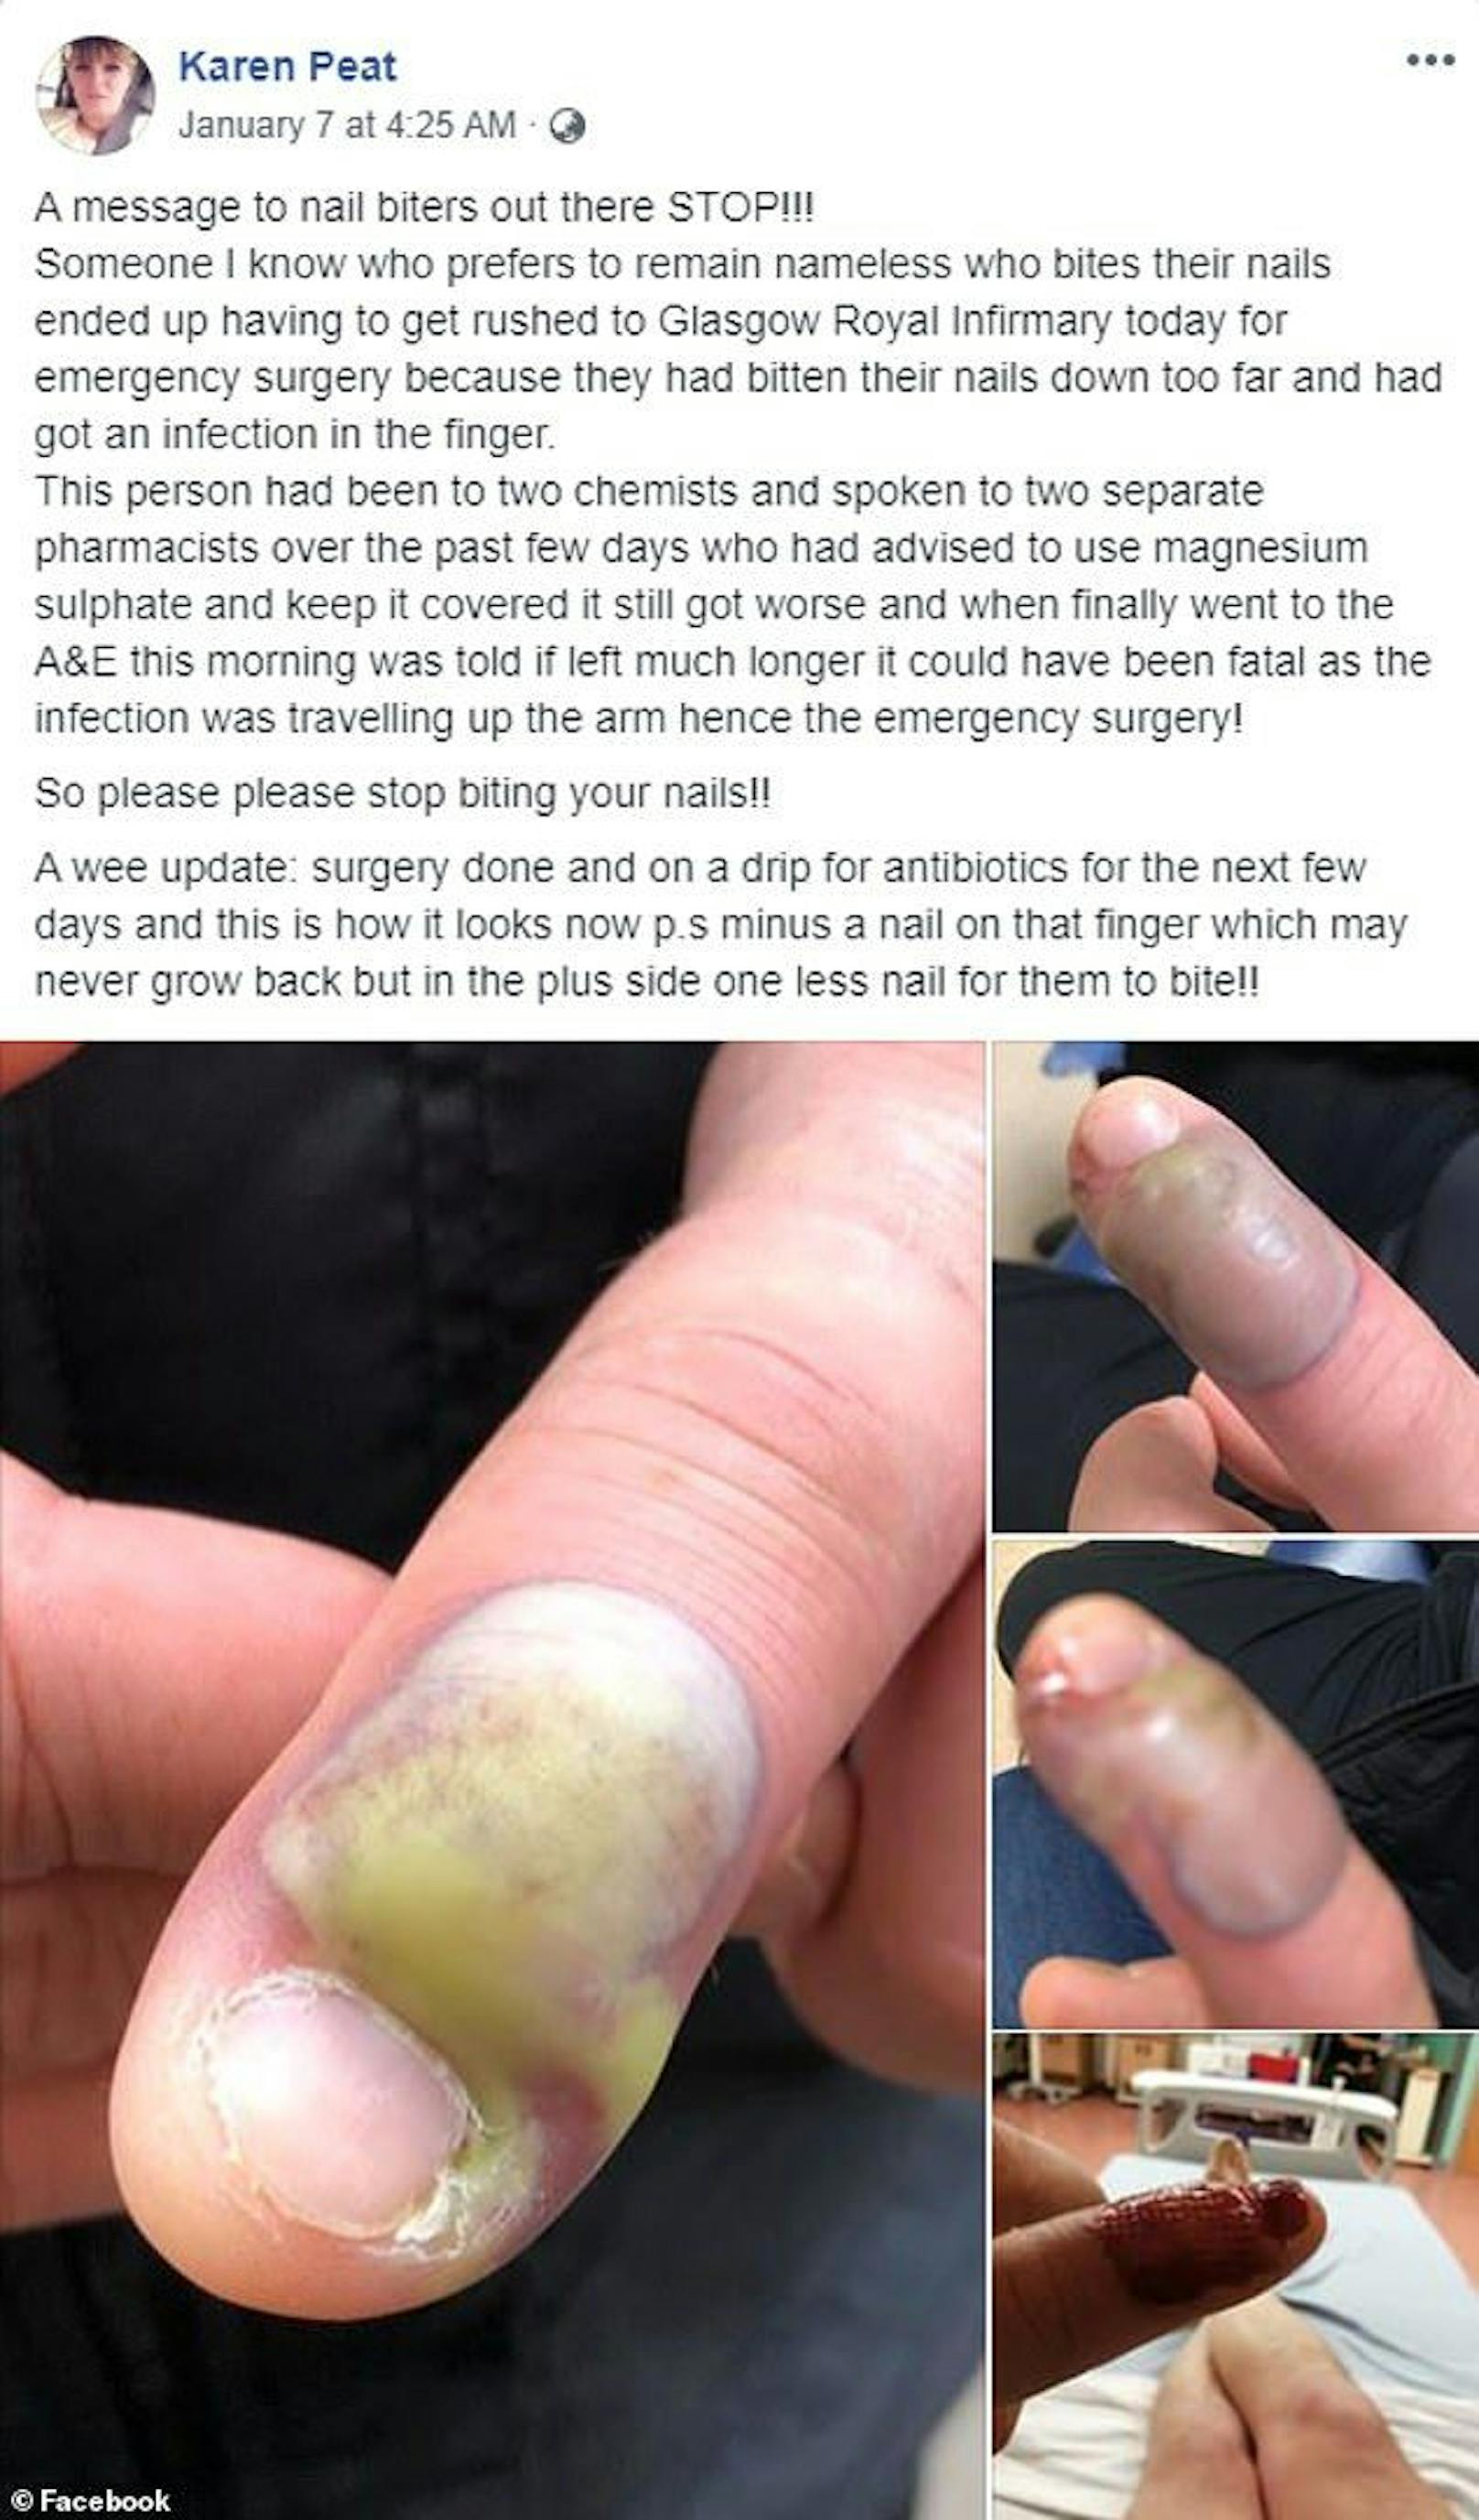 "Jemand, den ich kenne, der es vorzieht, namenlos zu bleiben, der sich in die Nägel beißt, musste heute zur Notoperation in die Glasgow Royal Infirmary eingeliefert werden, weil er sich zu weit in die Nägel gebissen hatte und eine Infektion im Finger hatte", schrieb Peat in ihrem Posting.